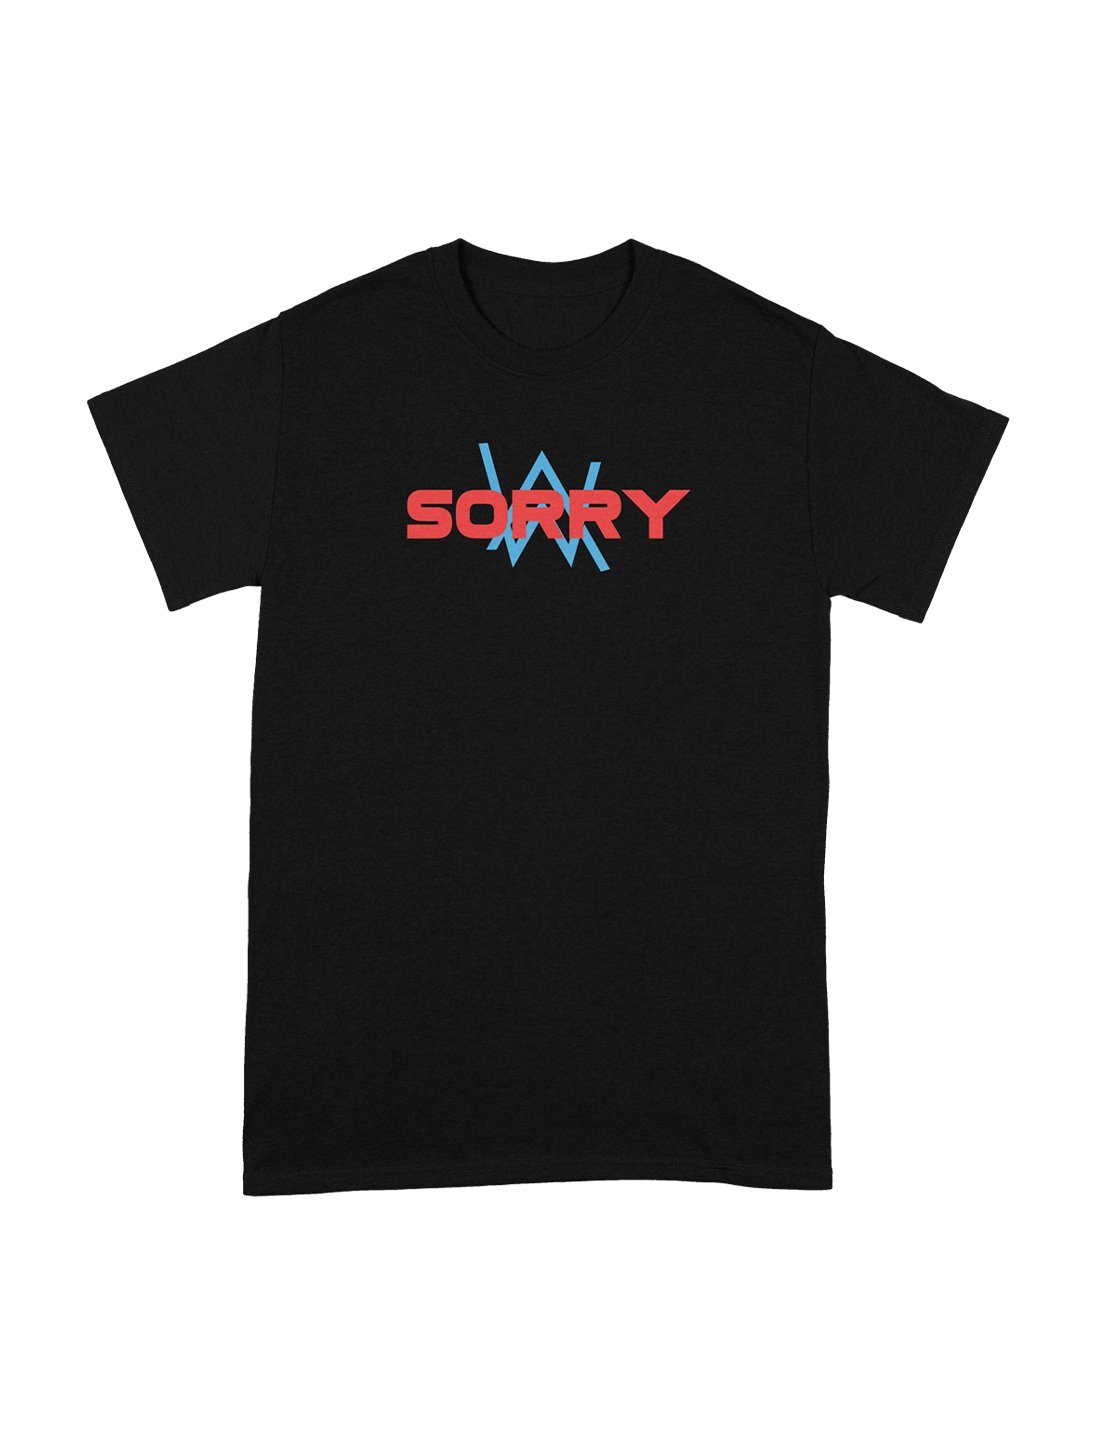 SORRY T-SHIRT Tee Alan Walker Official Merchandise 